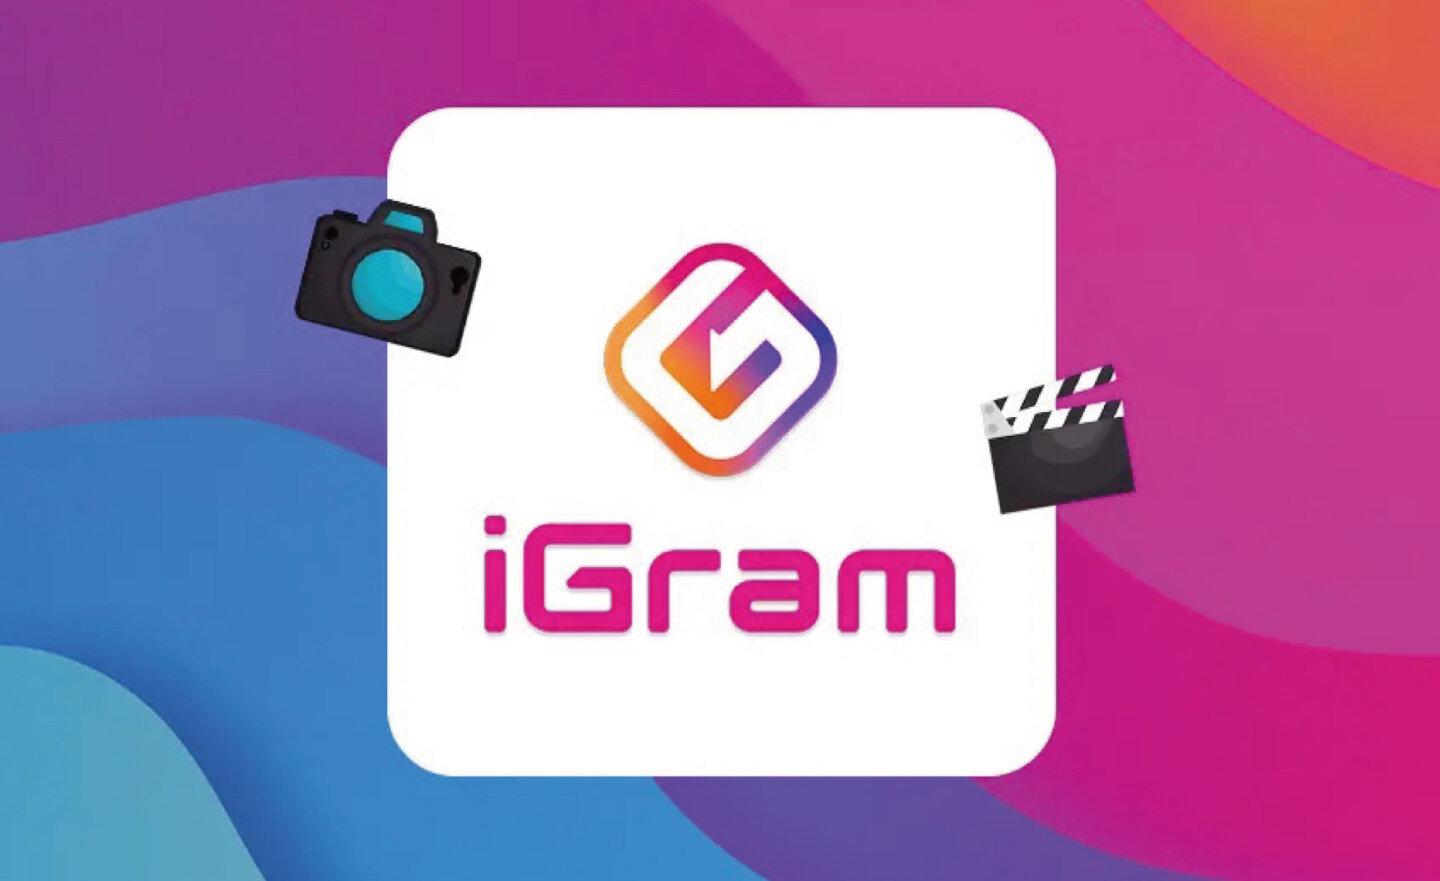 【免費】Instagram 下載網站「iGram」，快速儲存照片、影片和限時動態